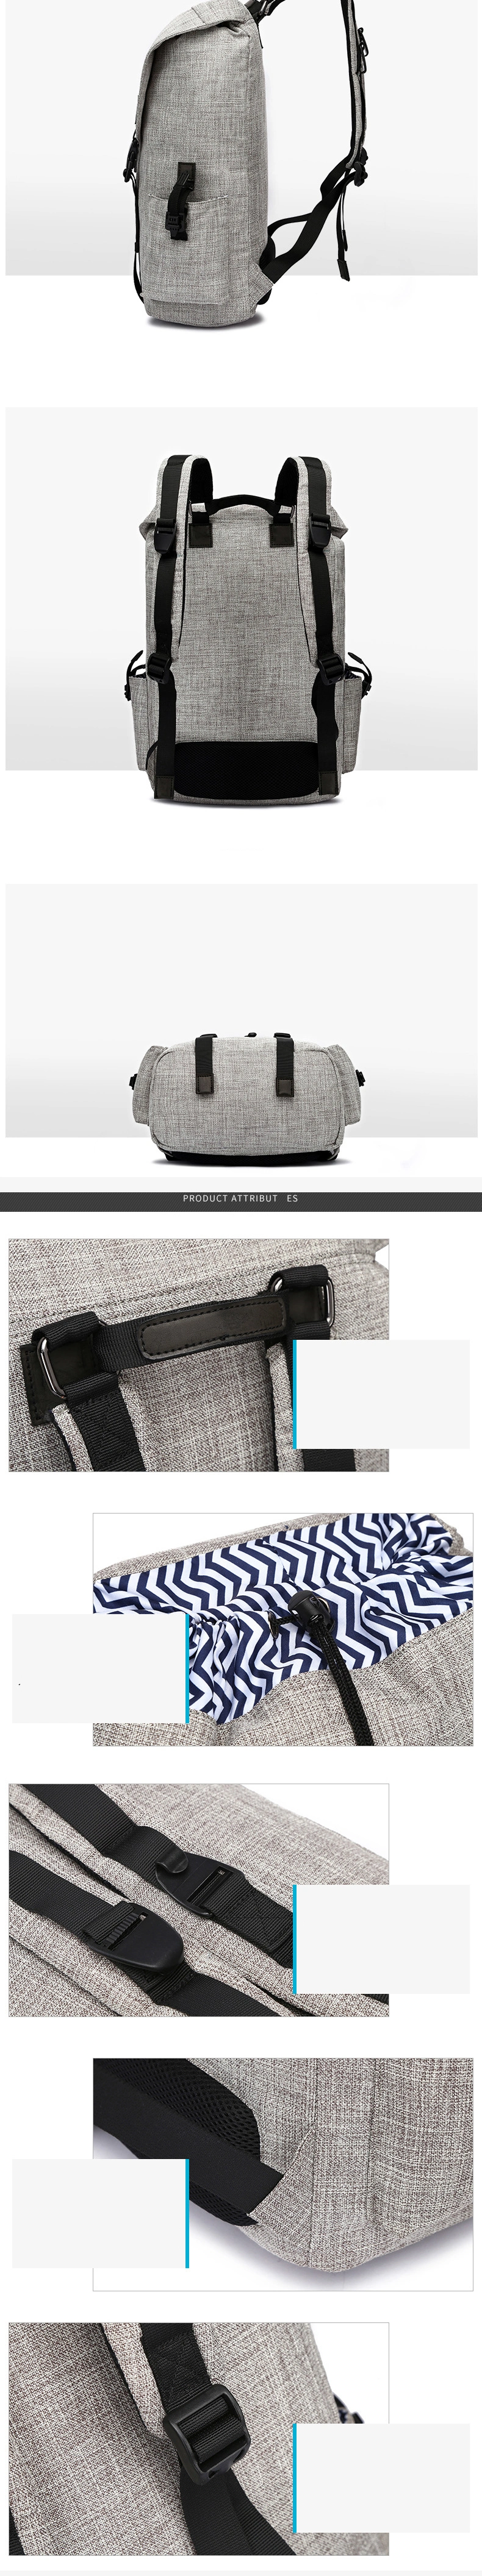 2018 New Double Shoulder Bag Trend Men's Leisure Bag Multifunctional Handbag Business Computer Bag